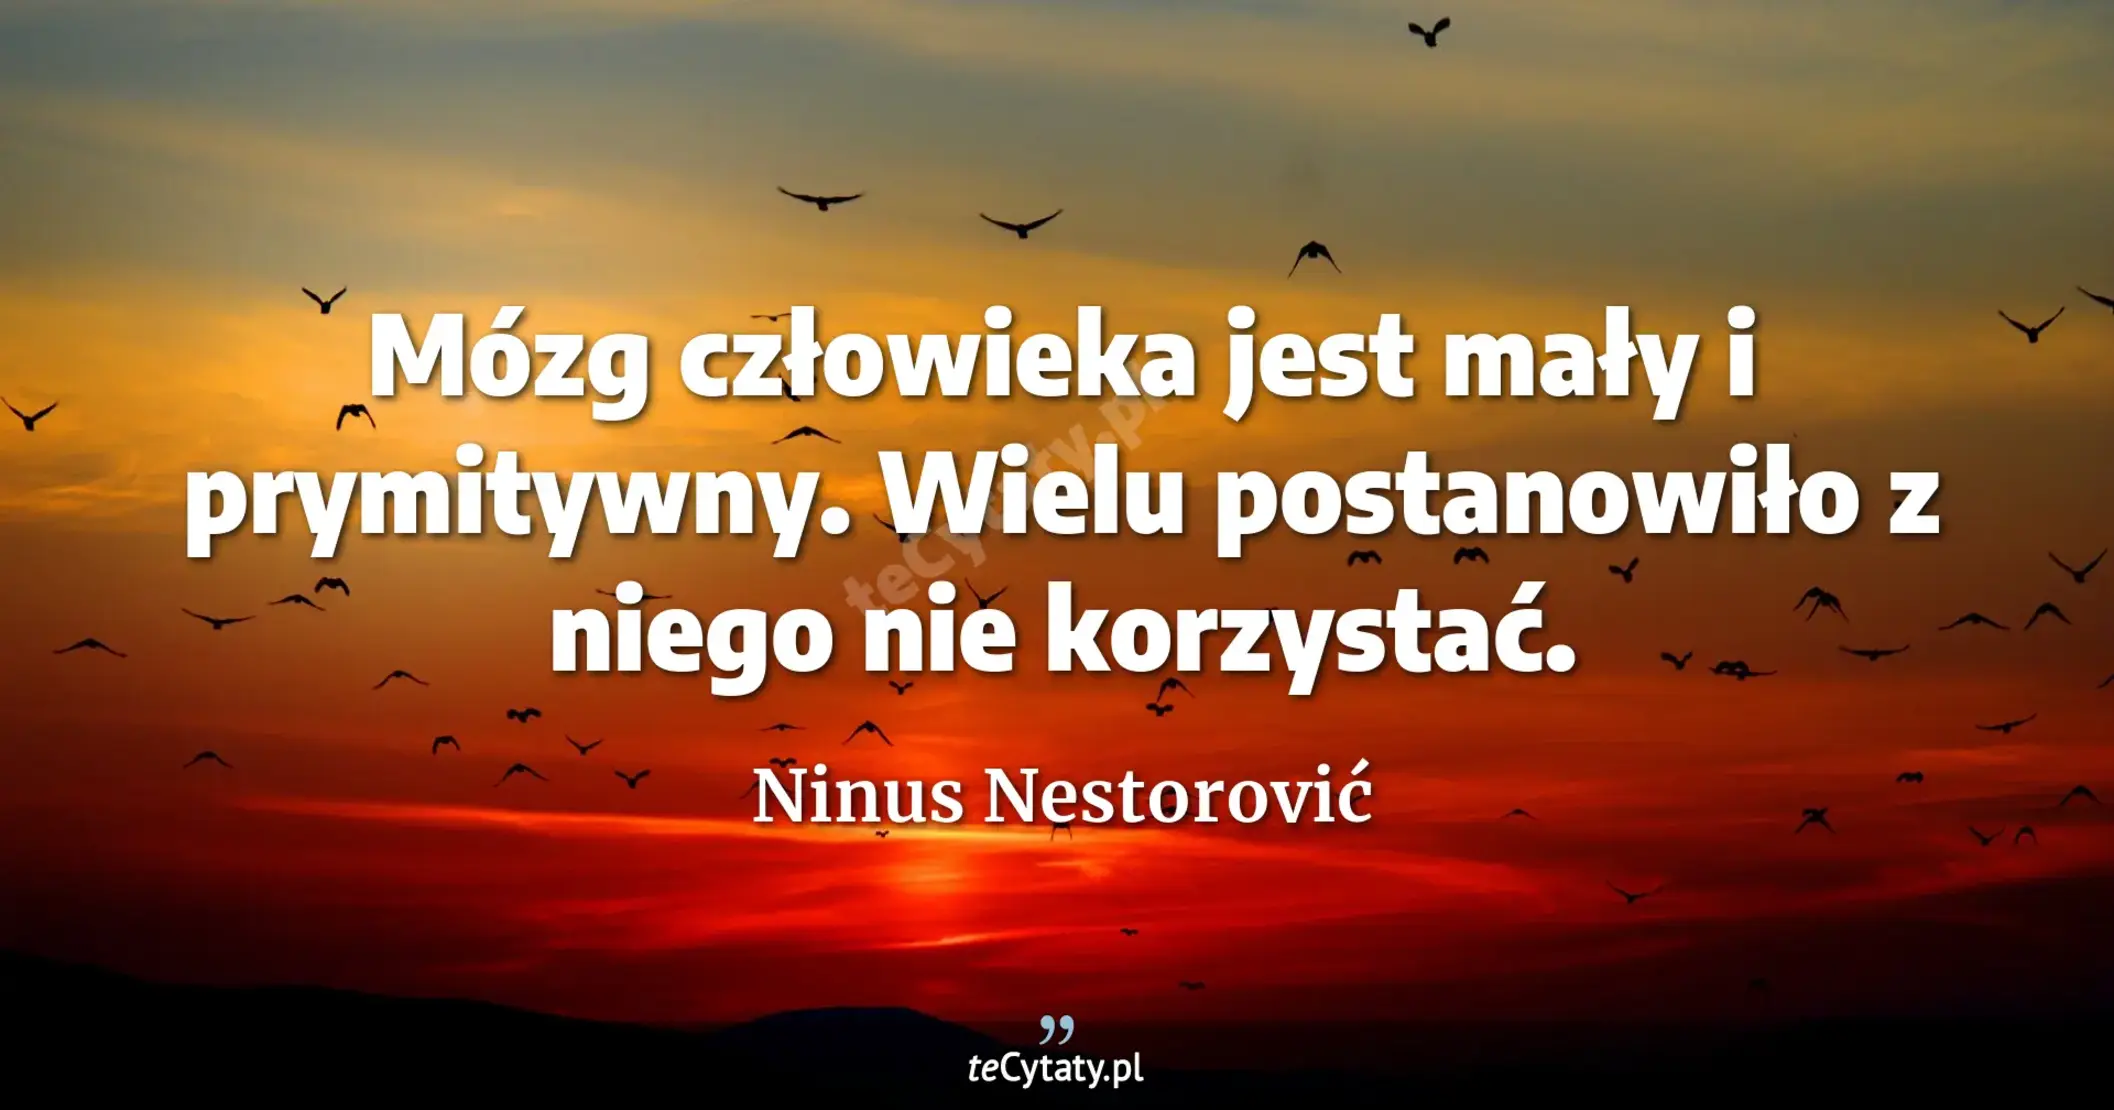 Mózg człowieka jest mały i prymitywny. Wielu postanowiło z niego nie korzystać. - Ninus Nestorović